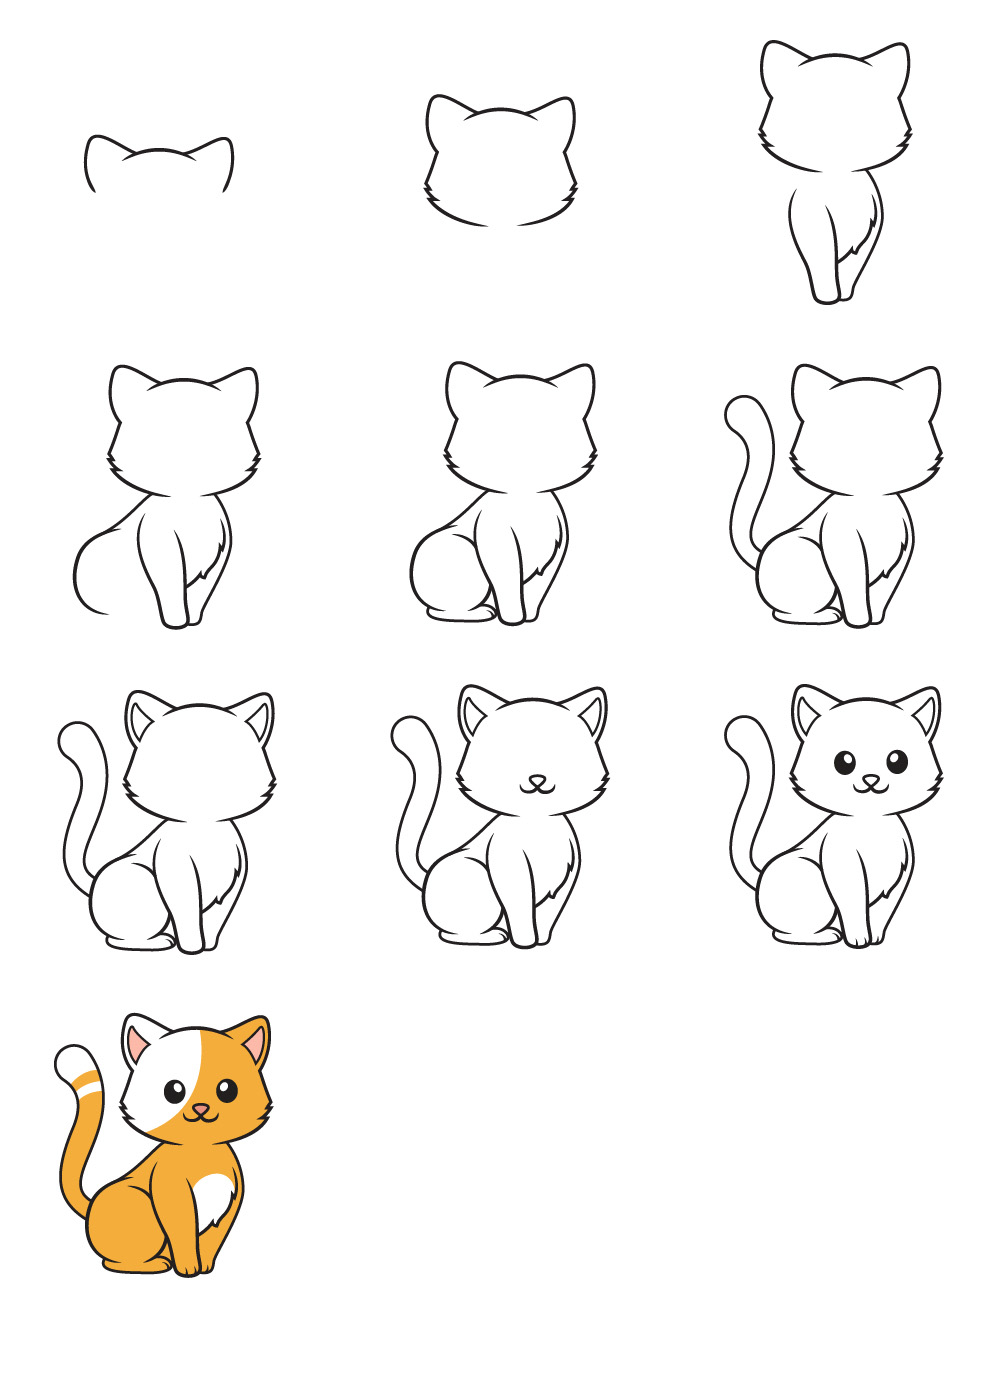 Vẽ Tay Hoạt Hình Con Mèo Con Màu Vàng đang Ngủ  Công cụ đồ họa PSD Tải  xuống miễn phí  Pikbest